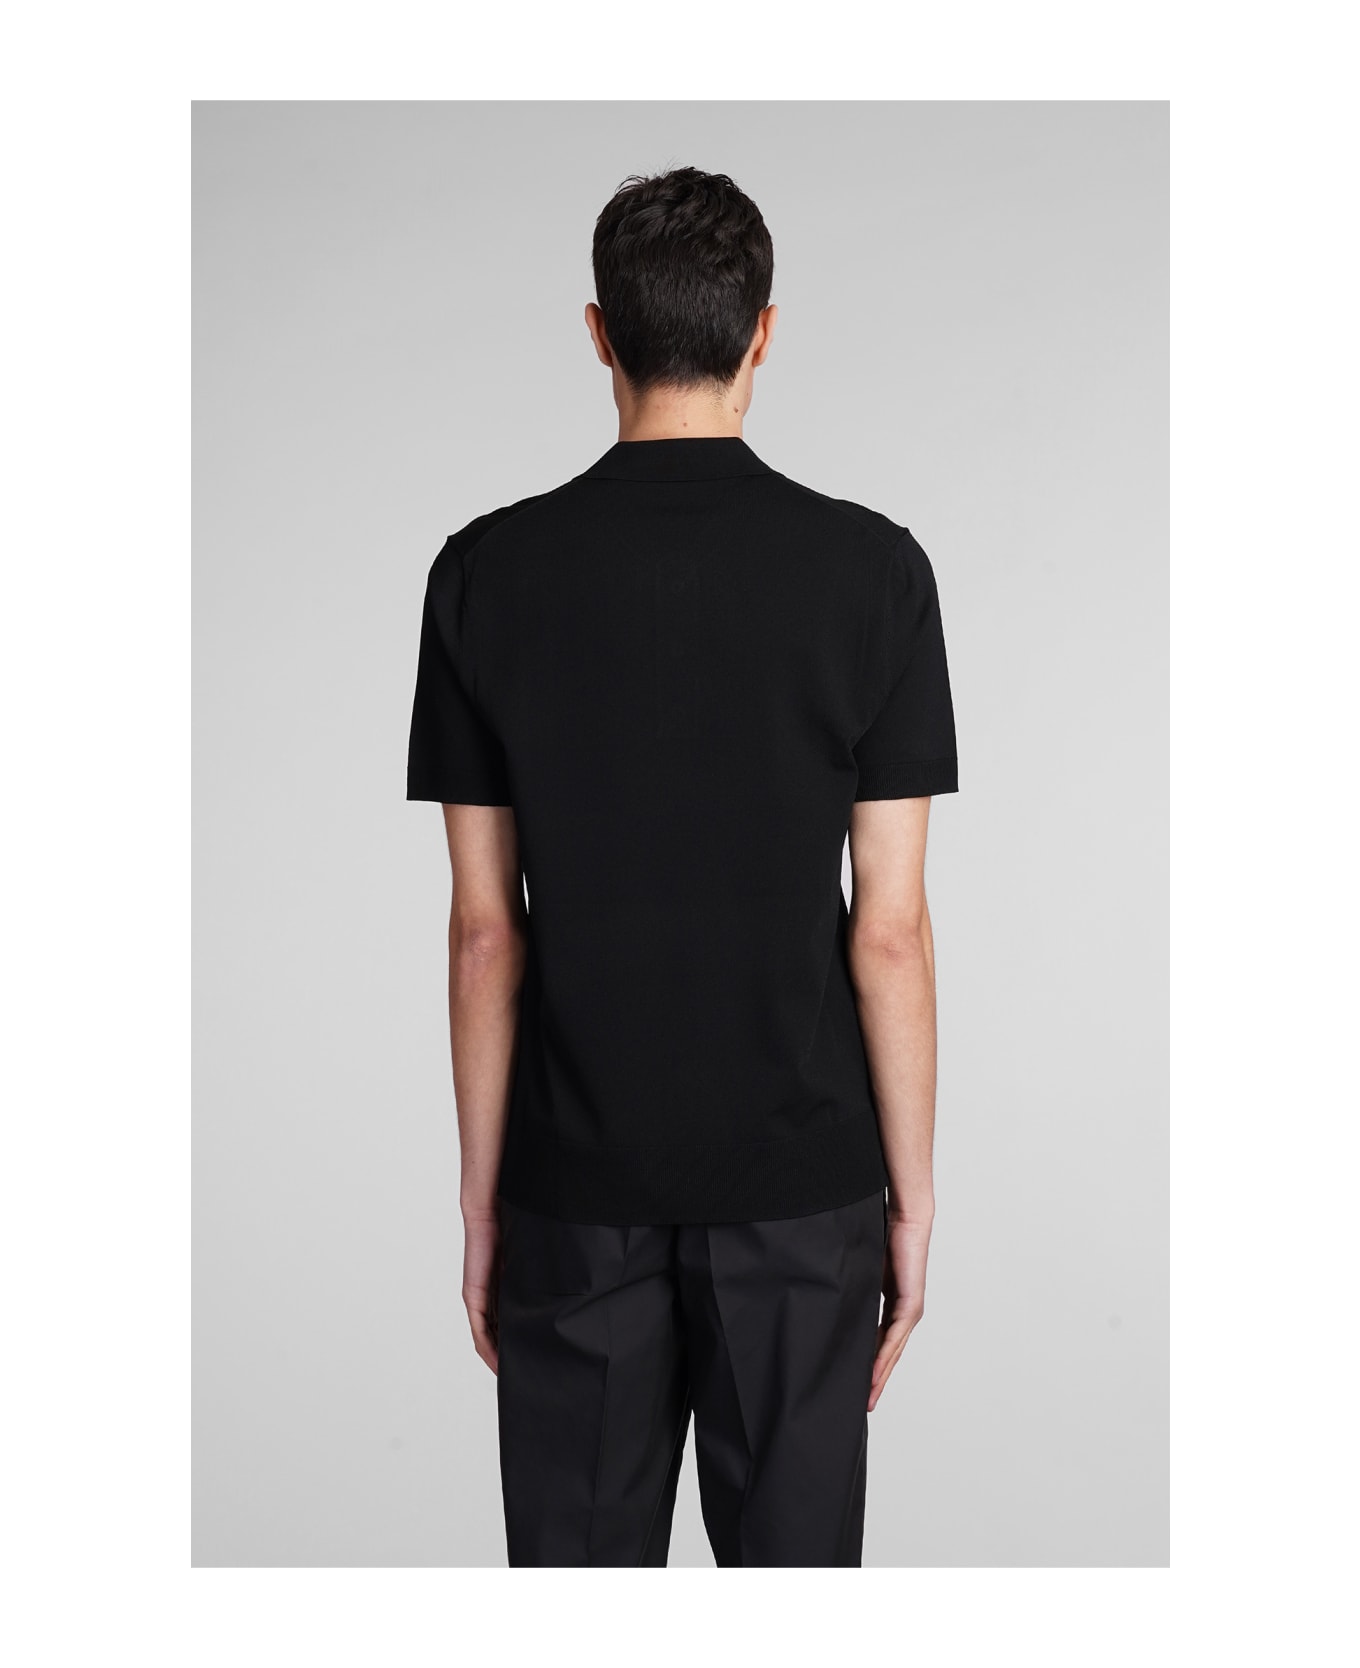 Neil Barrett Polo In Black Viscose - black ポロシャツ